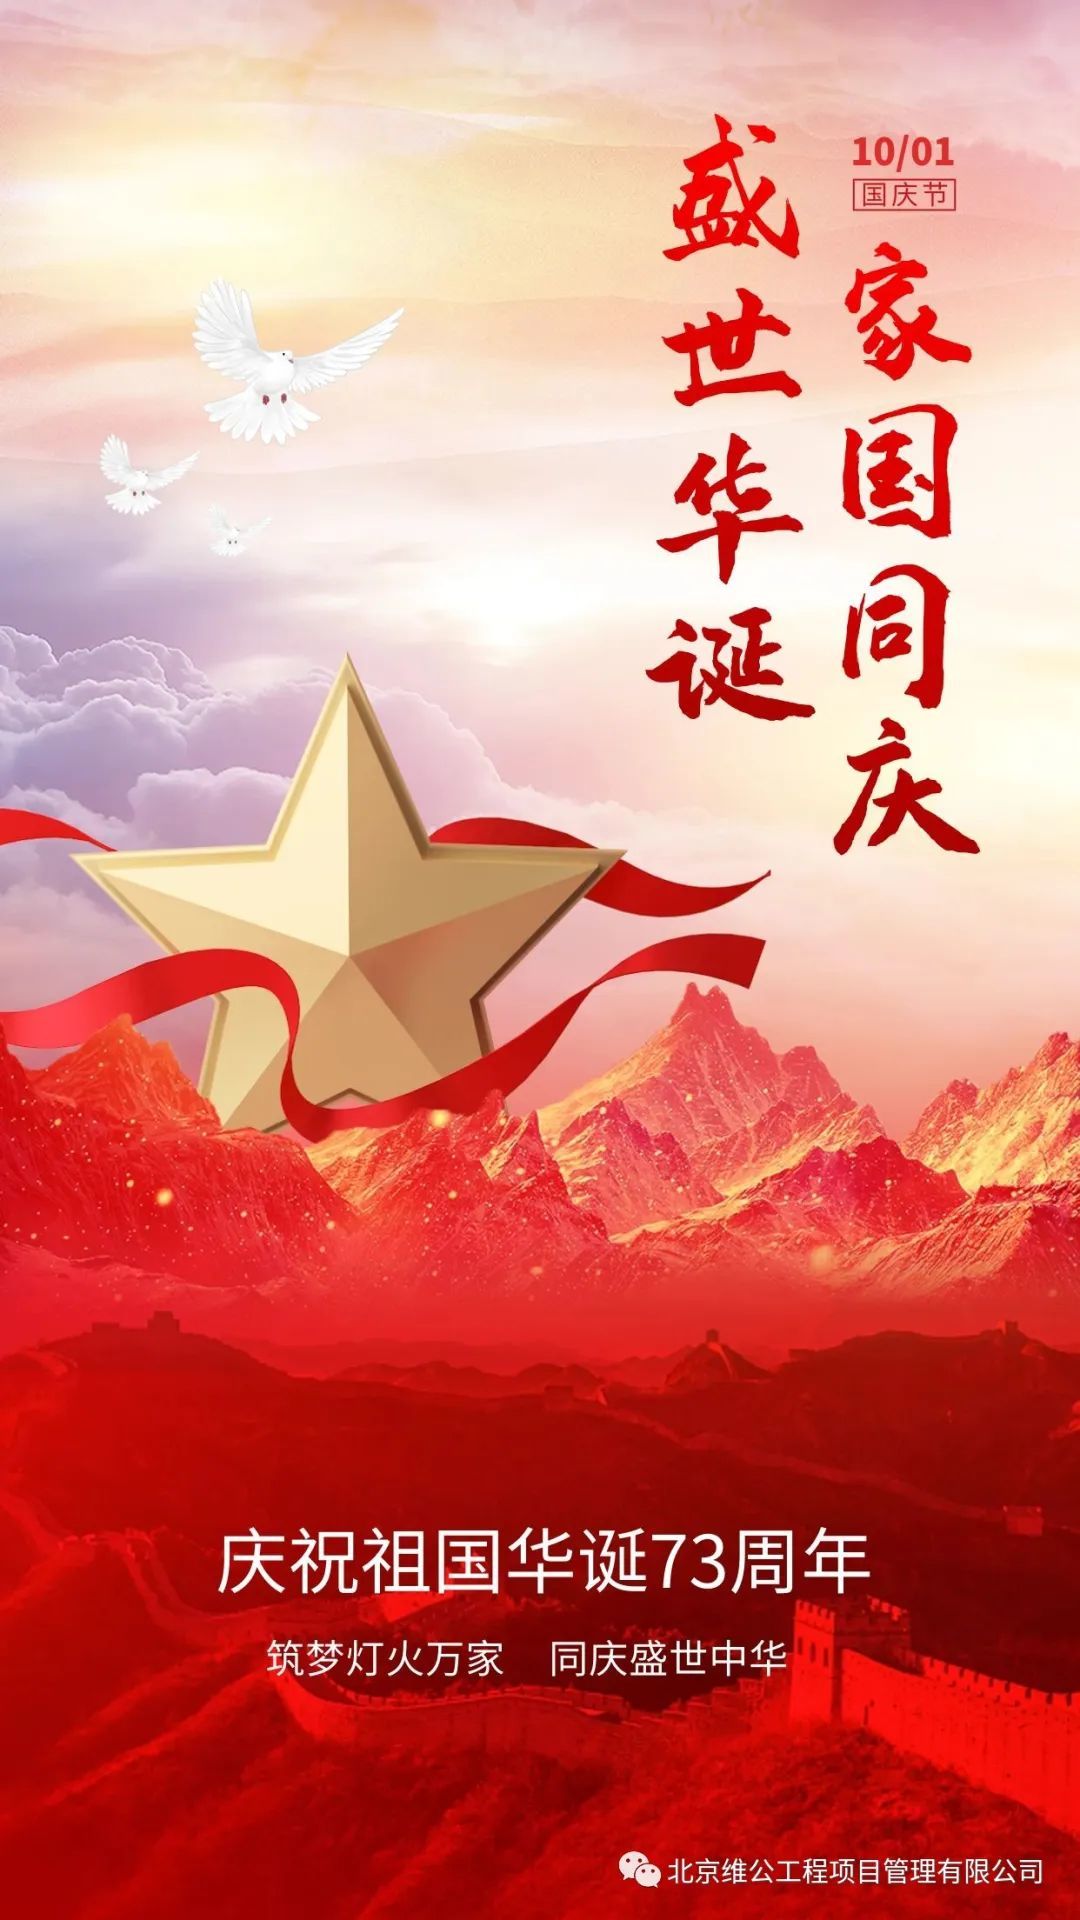 热烈庆祝中华人民共和国建立73周年